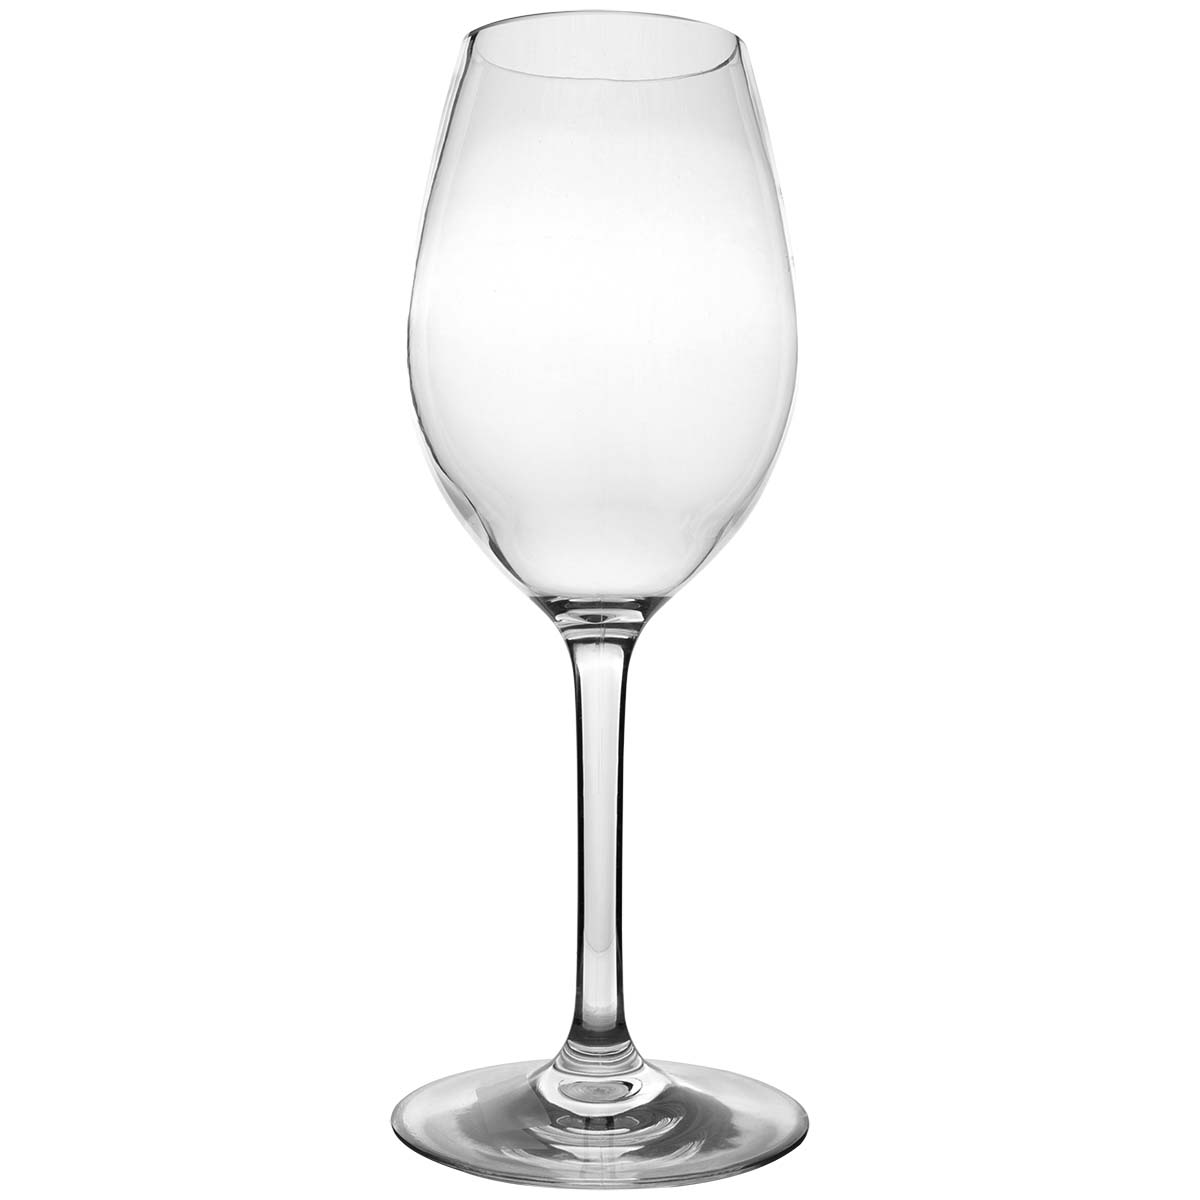 6101460 Een extra stevig en elegant witte wijnglas. Gemaakt van 100% tritan. Hierdoor is het glas vrijwel onbreekbaar, lichtgewicht en kraswerend. Ook is dit glas vaatwasmachinebestendig. Het glas is BPA vrij.